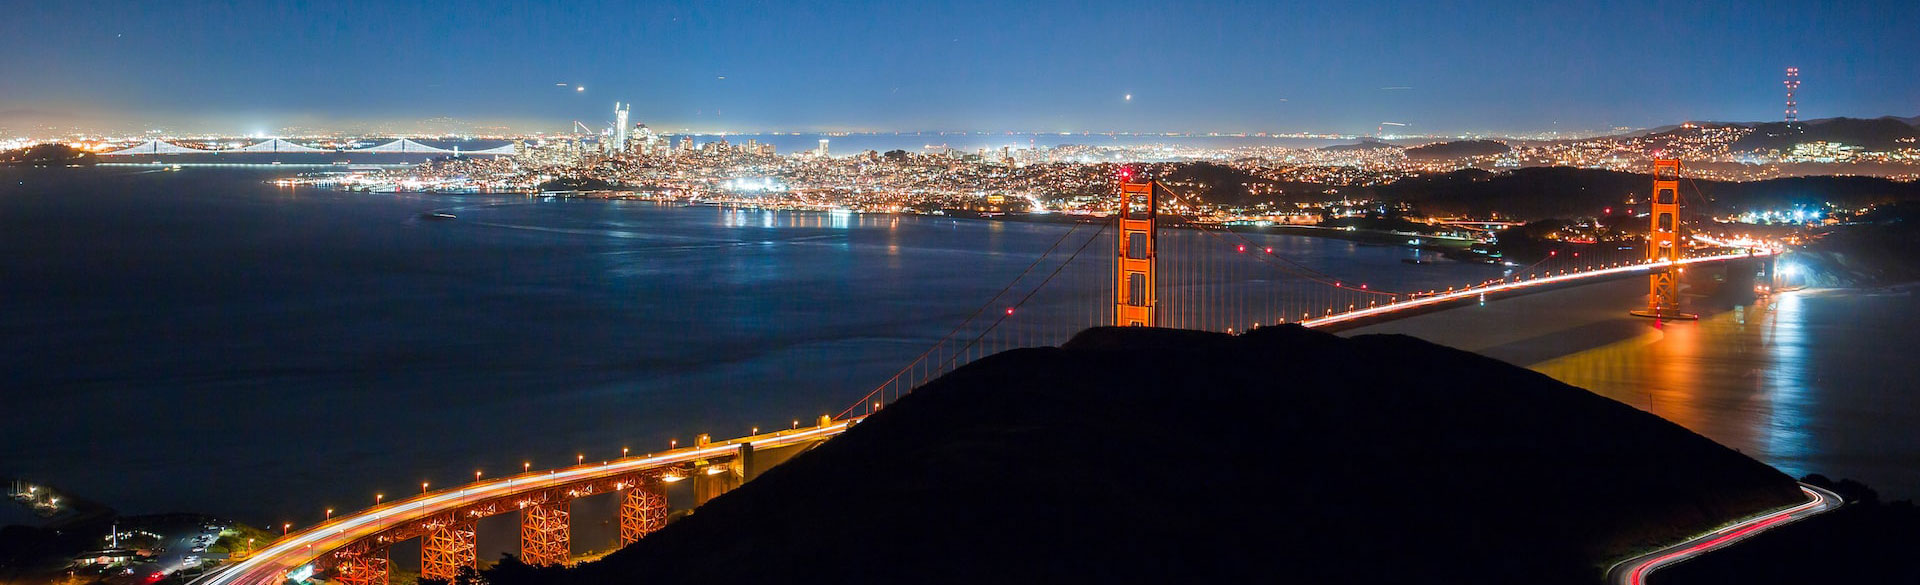 San Francisco Bay und Golden Gate Bridge bei Nacht